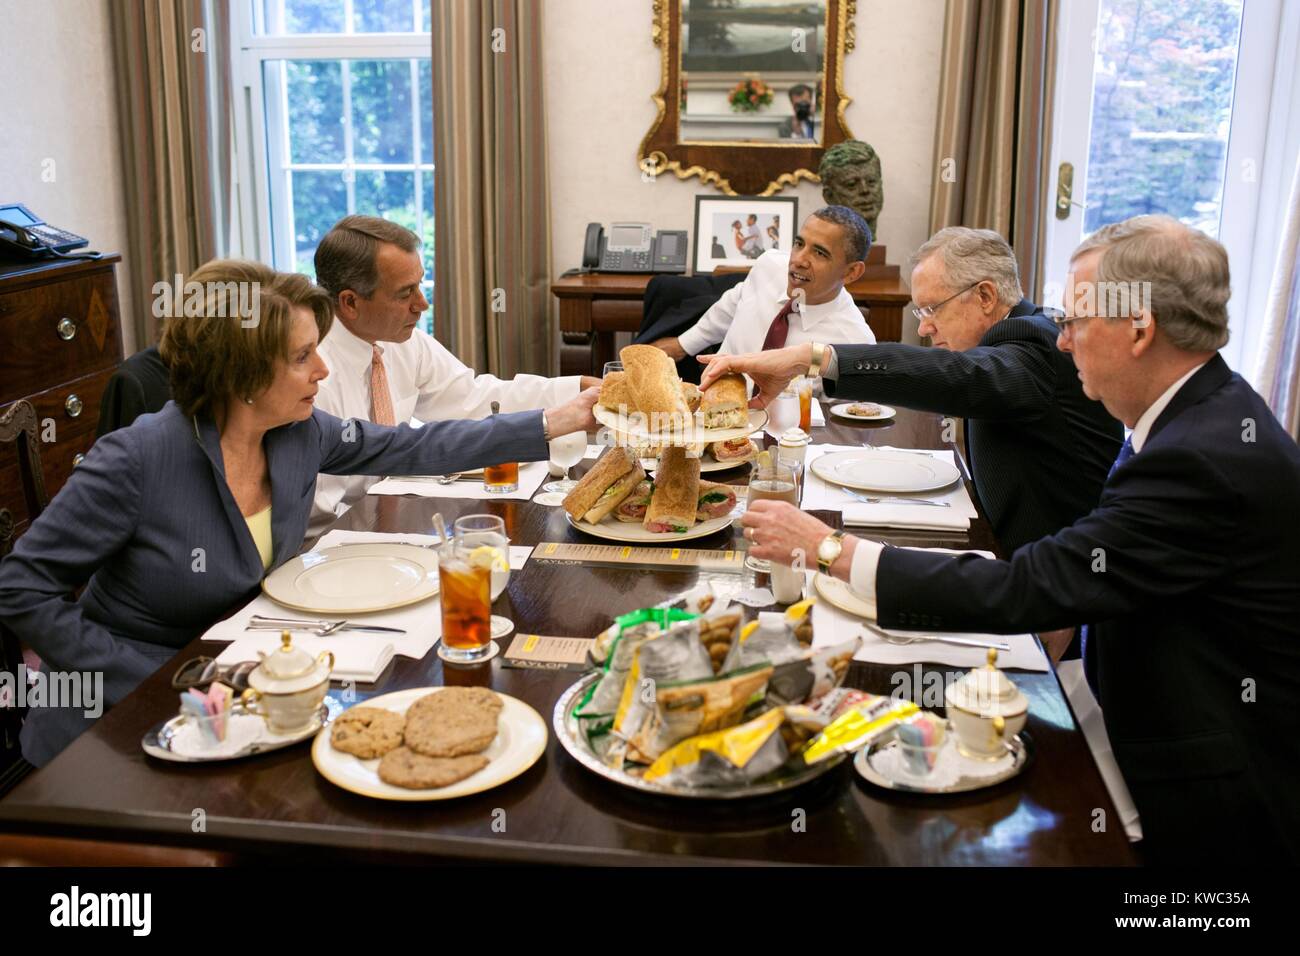 Präsident Barack Obama zu Mittag mit Kongreßführung, 16. Mai 2012. L-R: Nancy Pelosi, John Boehner, der Präsident, Harry Reid, und Mitch McConnell. Der Präsident serviert hoagies im Oval Office des Weißen Hauses Private Esszimmer, 16. Mai 2012 (BSLOC 2015 13 221) Stockfoto